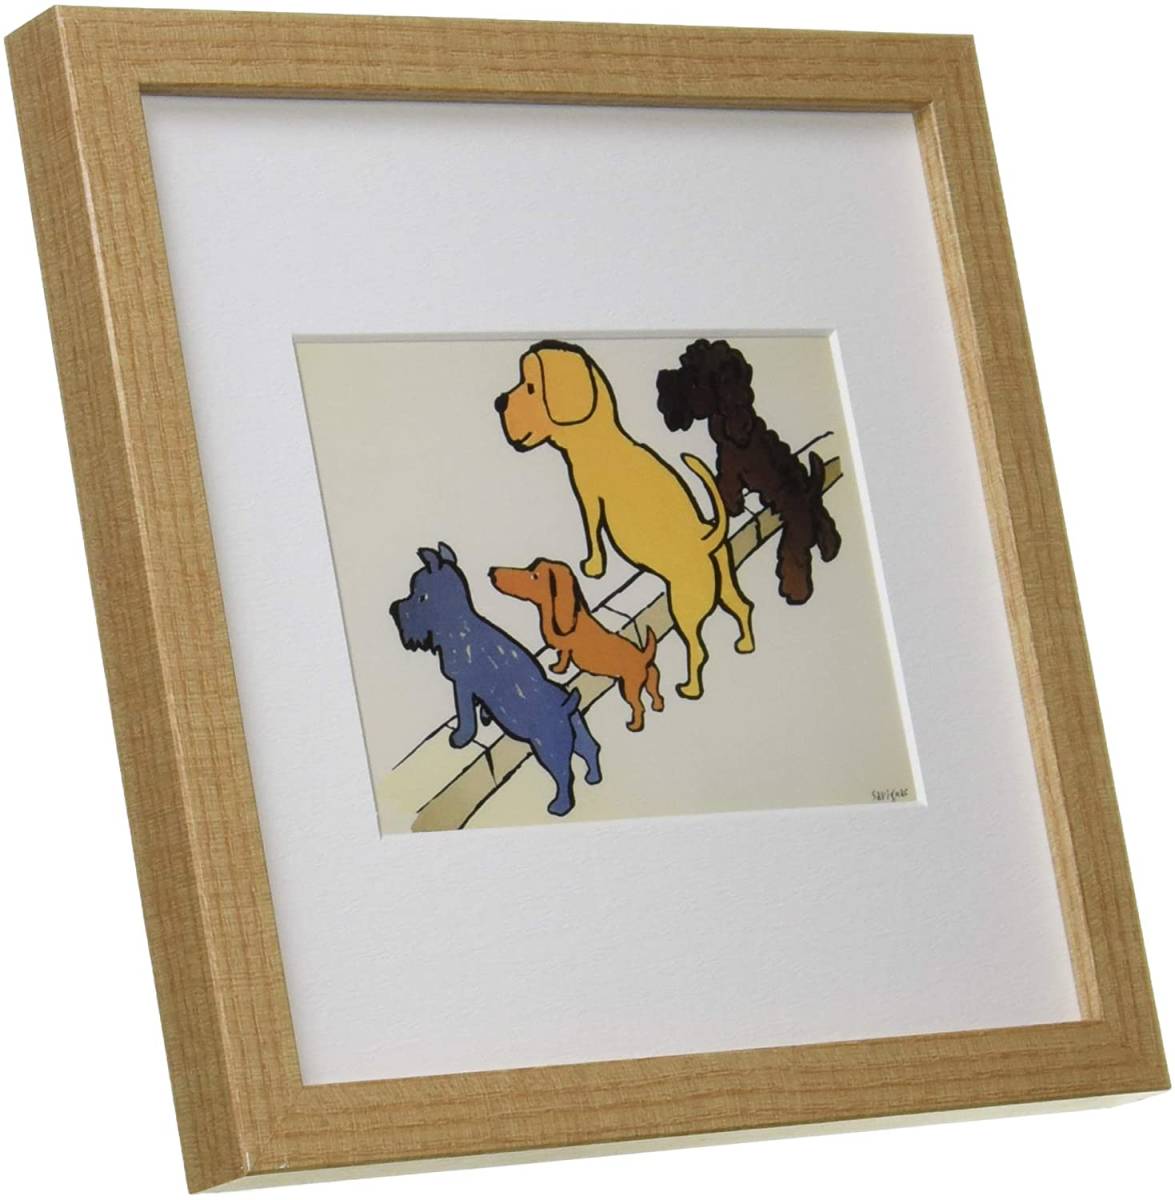 [प्रजनन] नई कला फ़्रेम कला चित्र पेंटिंग चित्रण फ़्रेमयुक्त कुत्ता रेमंड सविग्नाक कला पोस्टर 22x22 सेमी कुत्ता पेंटिंग, कलाकृति, चित्रकारी, अन्य